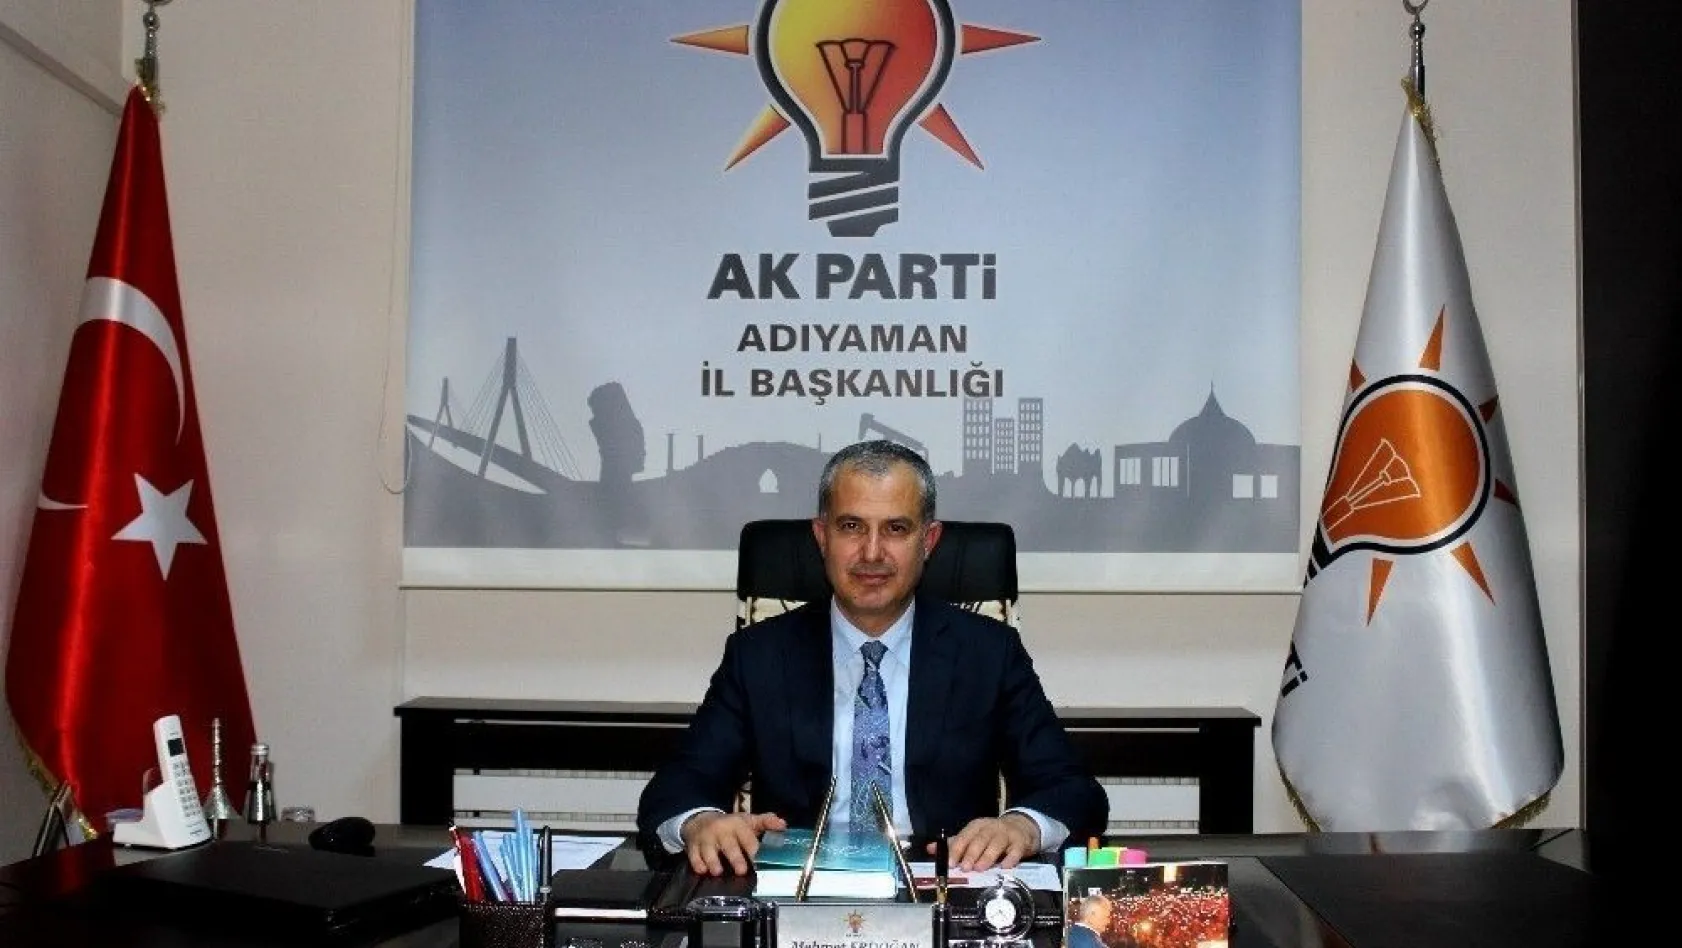 AK Parti İl Başkanı Erdoğan: 'Oyun kuranların oyunu bozuldu'
